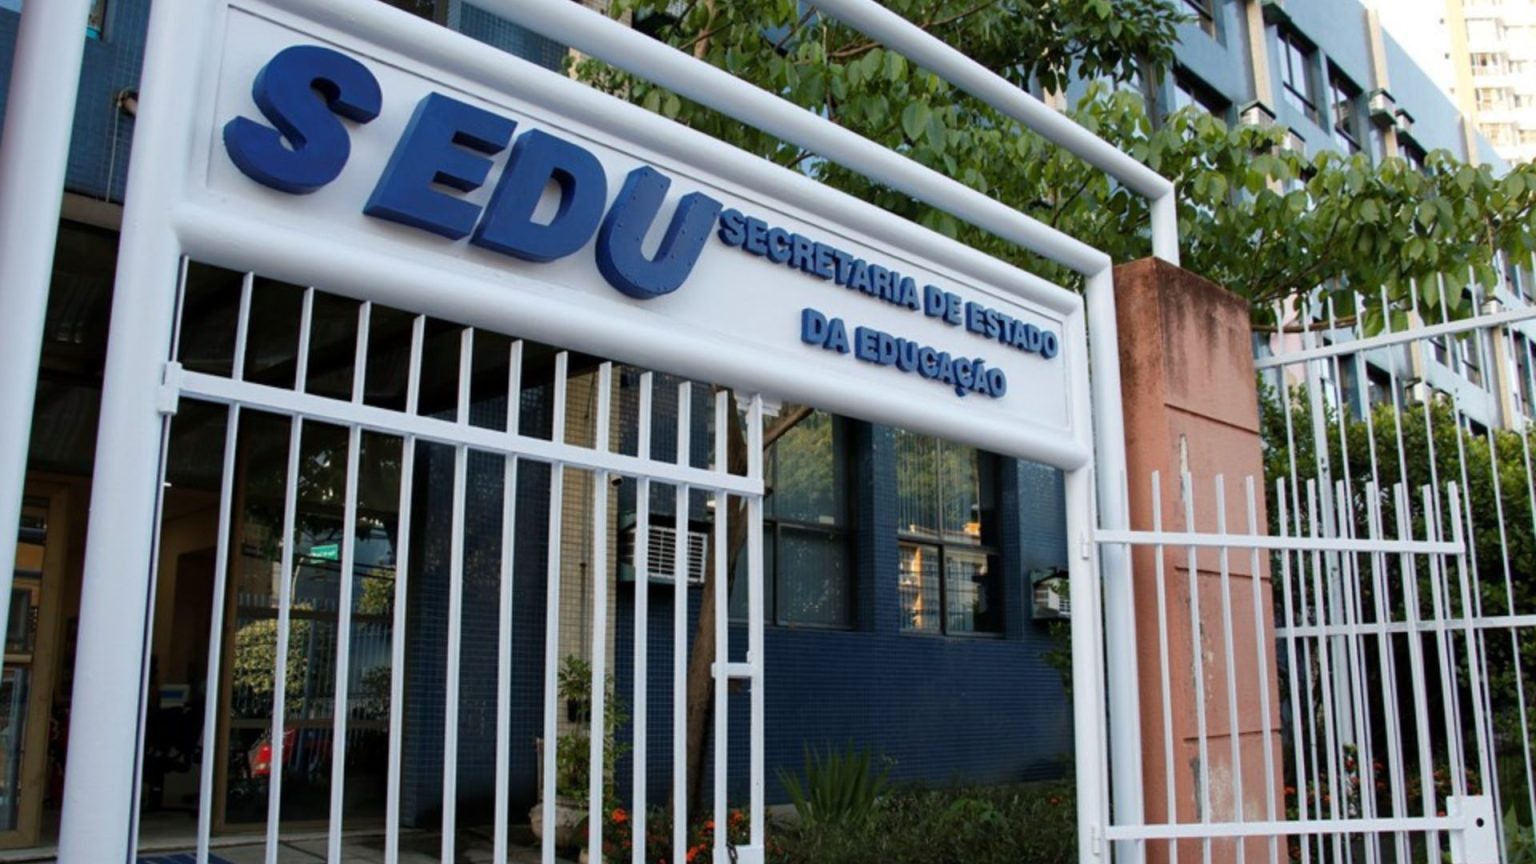 Secretaria de Educação lança concurso público com remuneração de R$ 5 mil